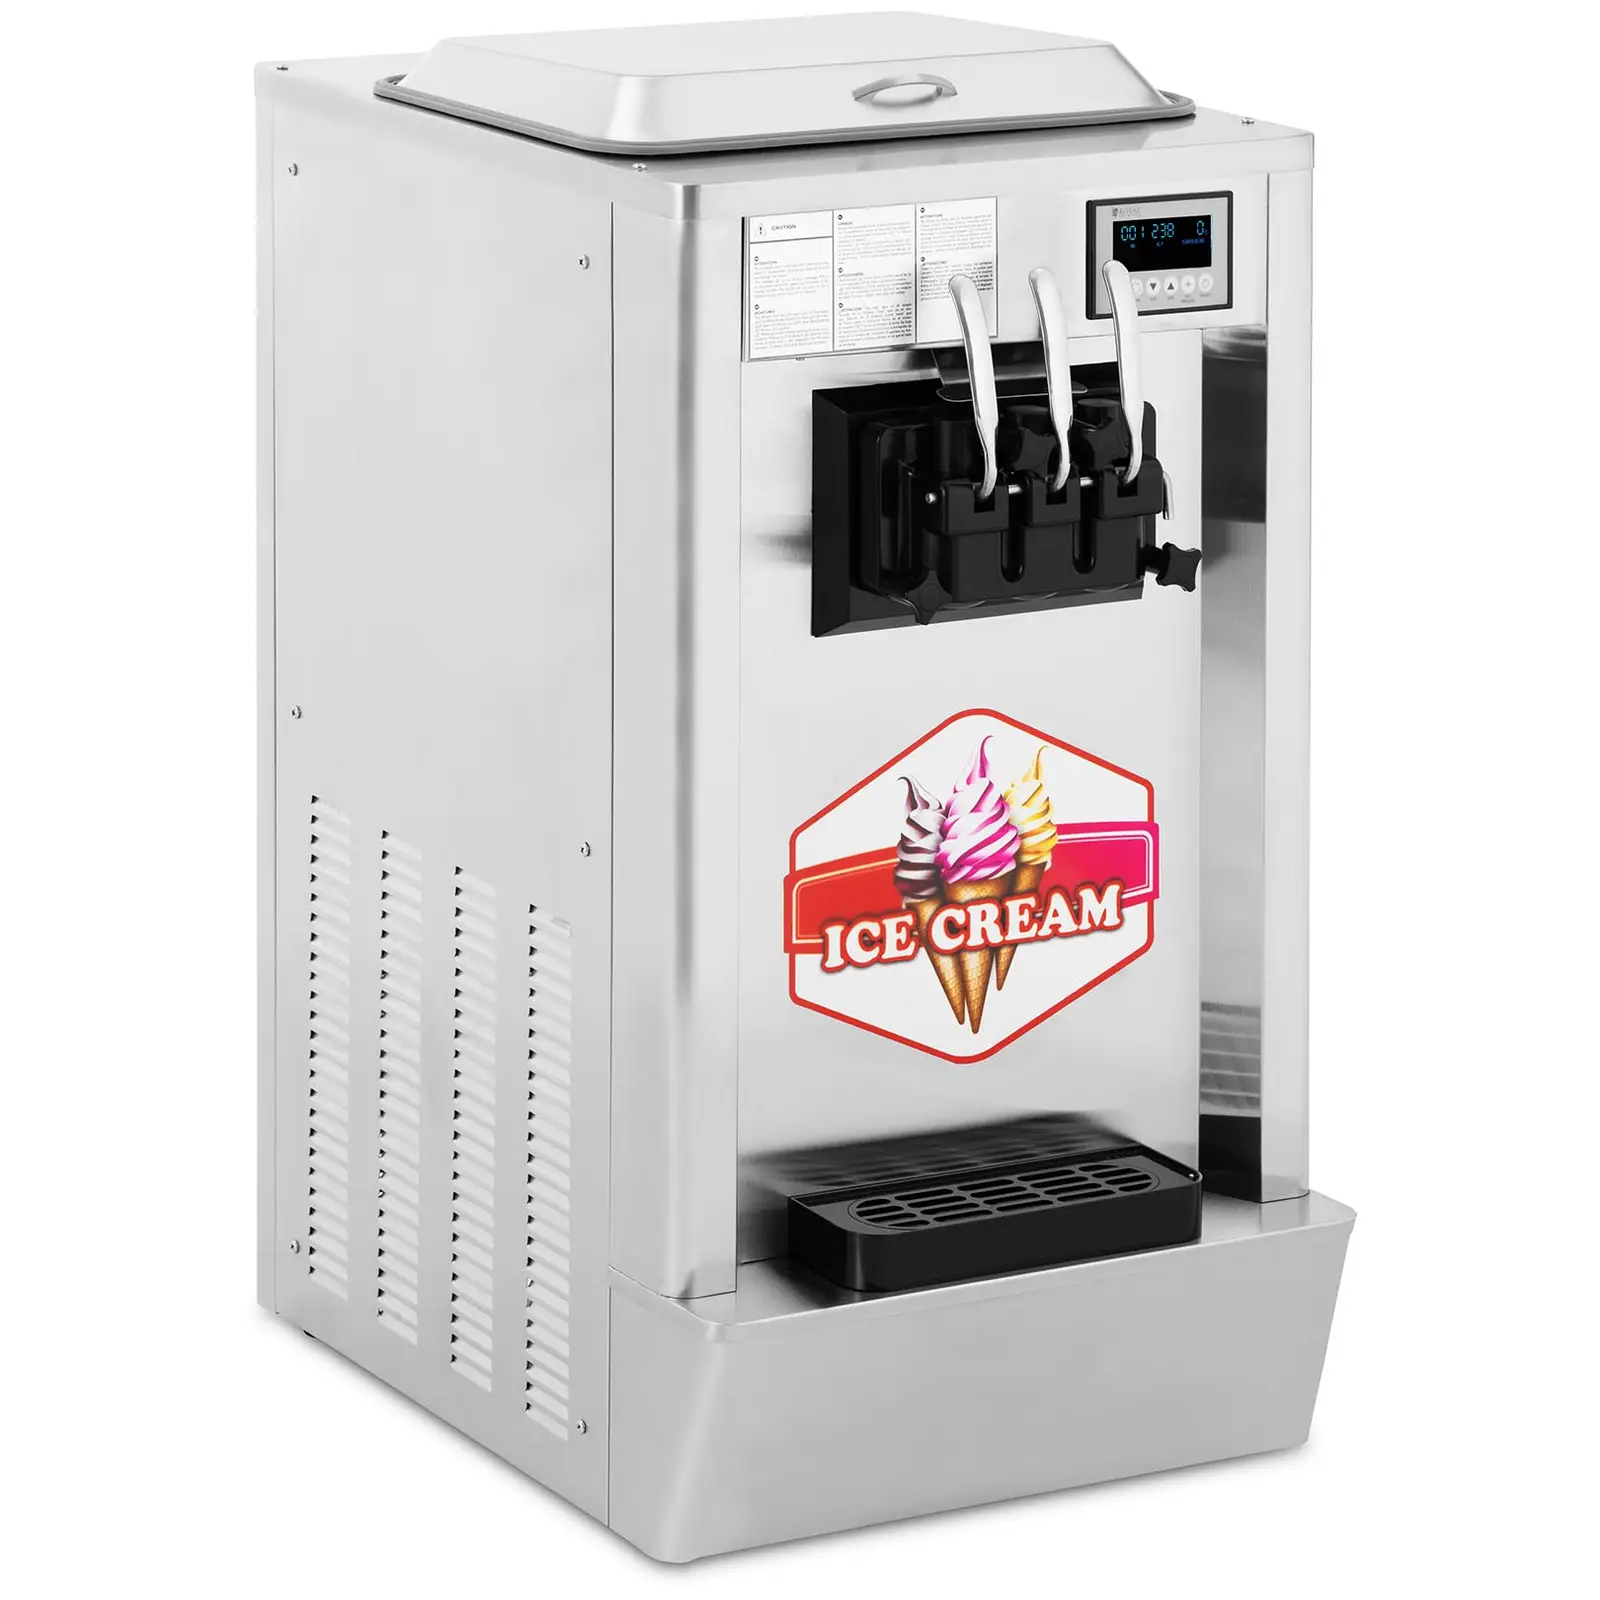 Stroj na točenú zmrzlinu - 1550 W - 23 l/h - 3 príchute